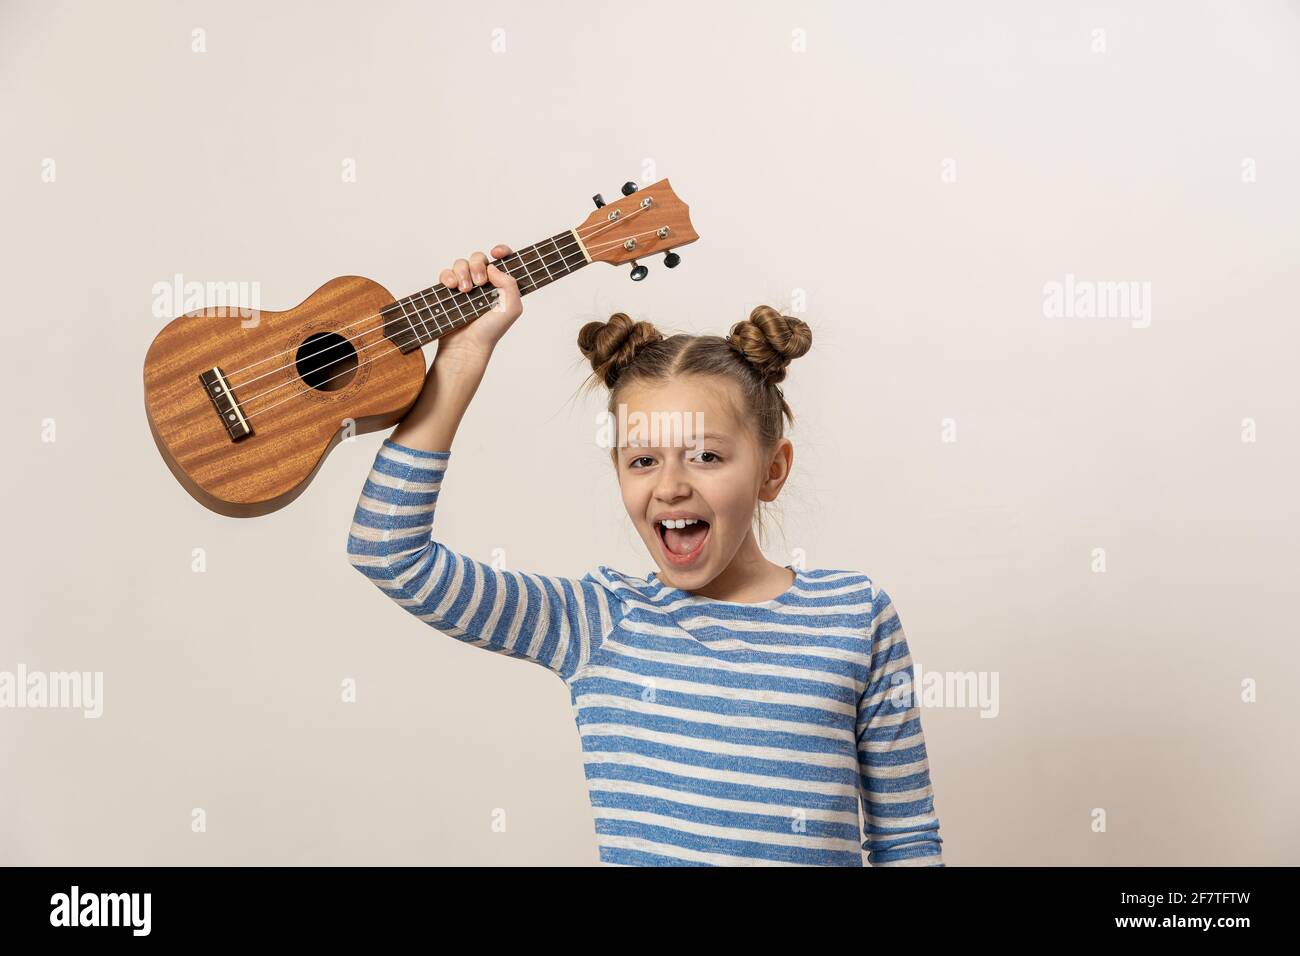 La ragazza canta e suona l'ukulele. Il bambino ride, si pone per la macchina fotografica e gode la musica. Imparare a giocare ukuleles Foto Stock